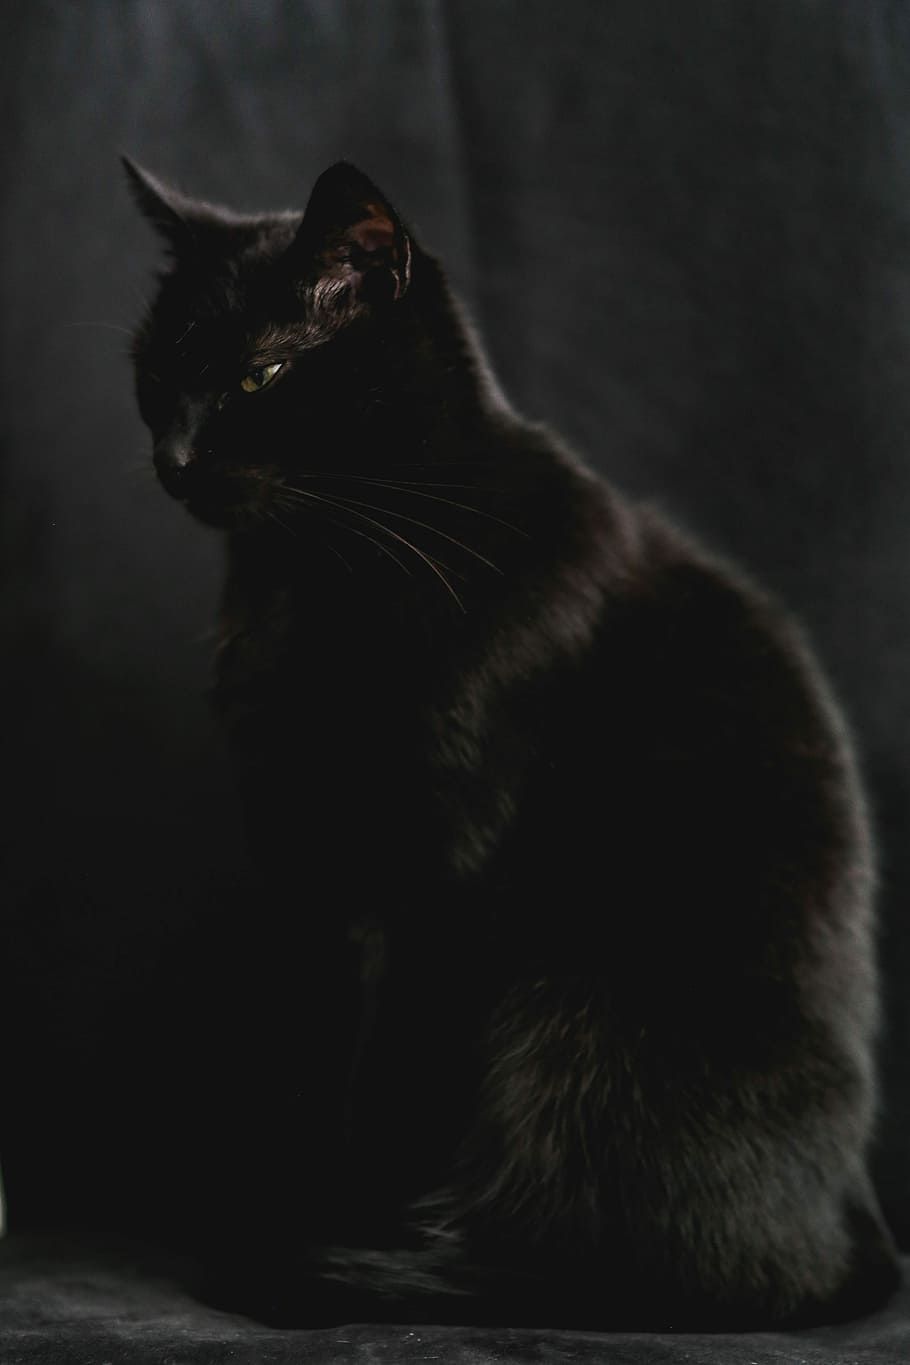 negro, Retrato, gato negro, mascota, animal, doméstico Gato, mascotas, mamíferos, felino, piel